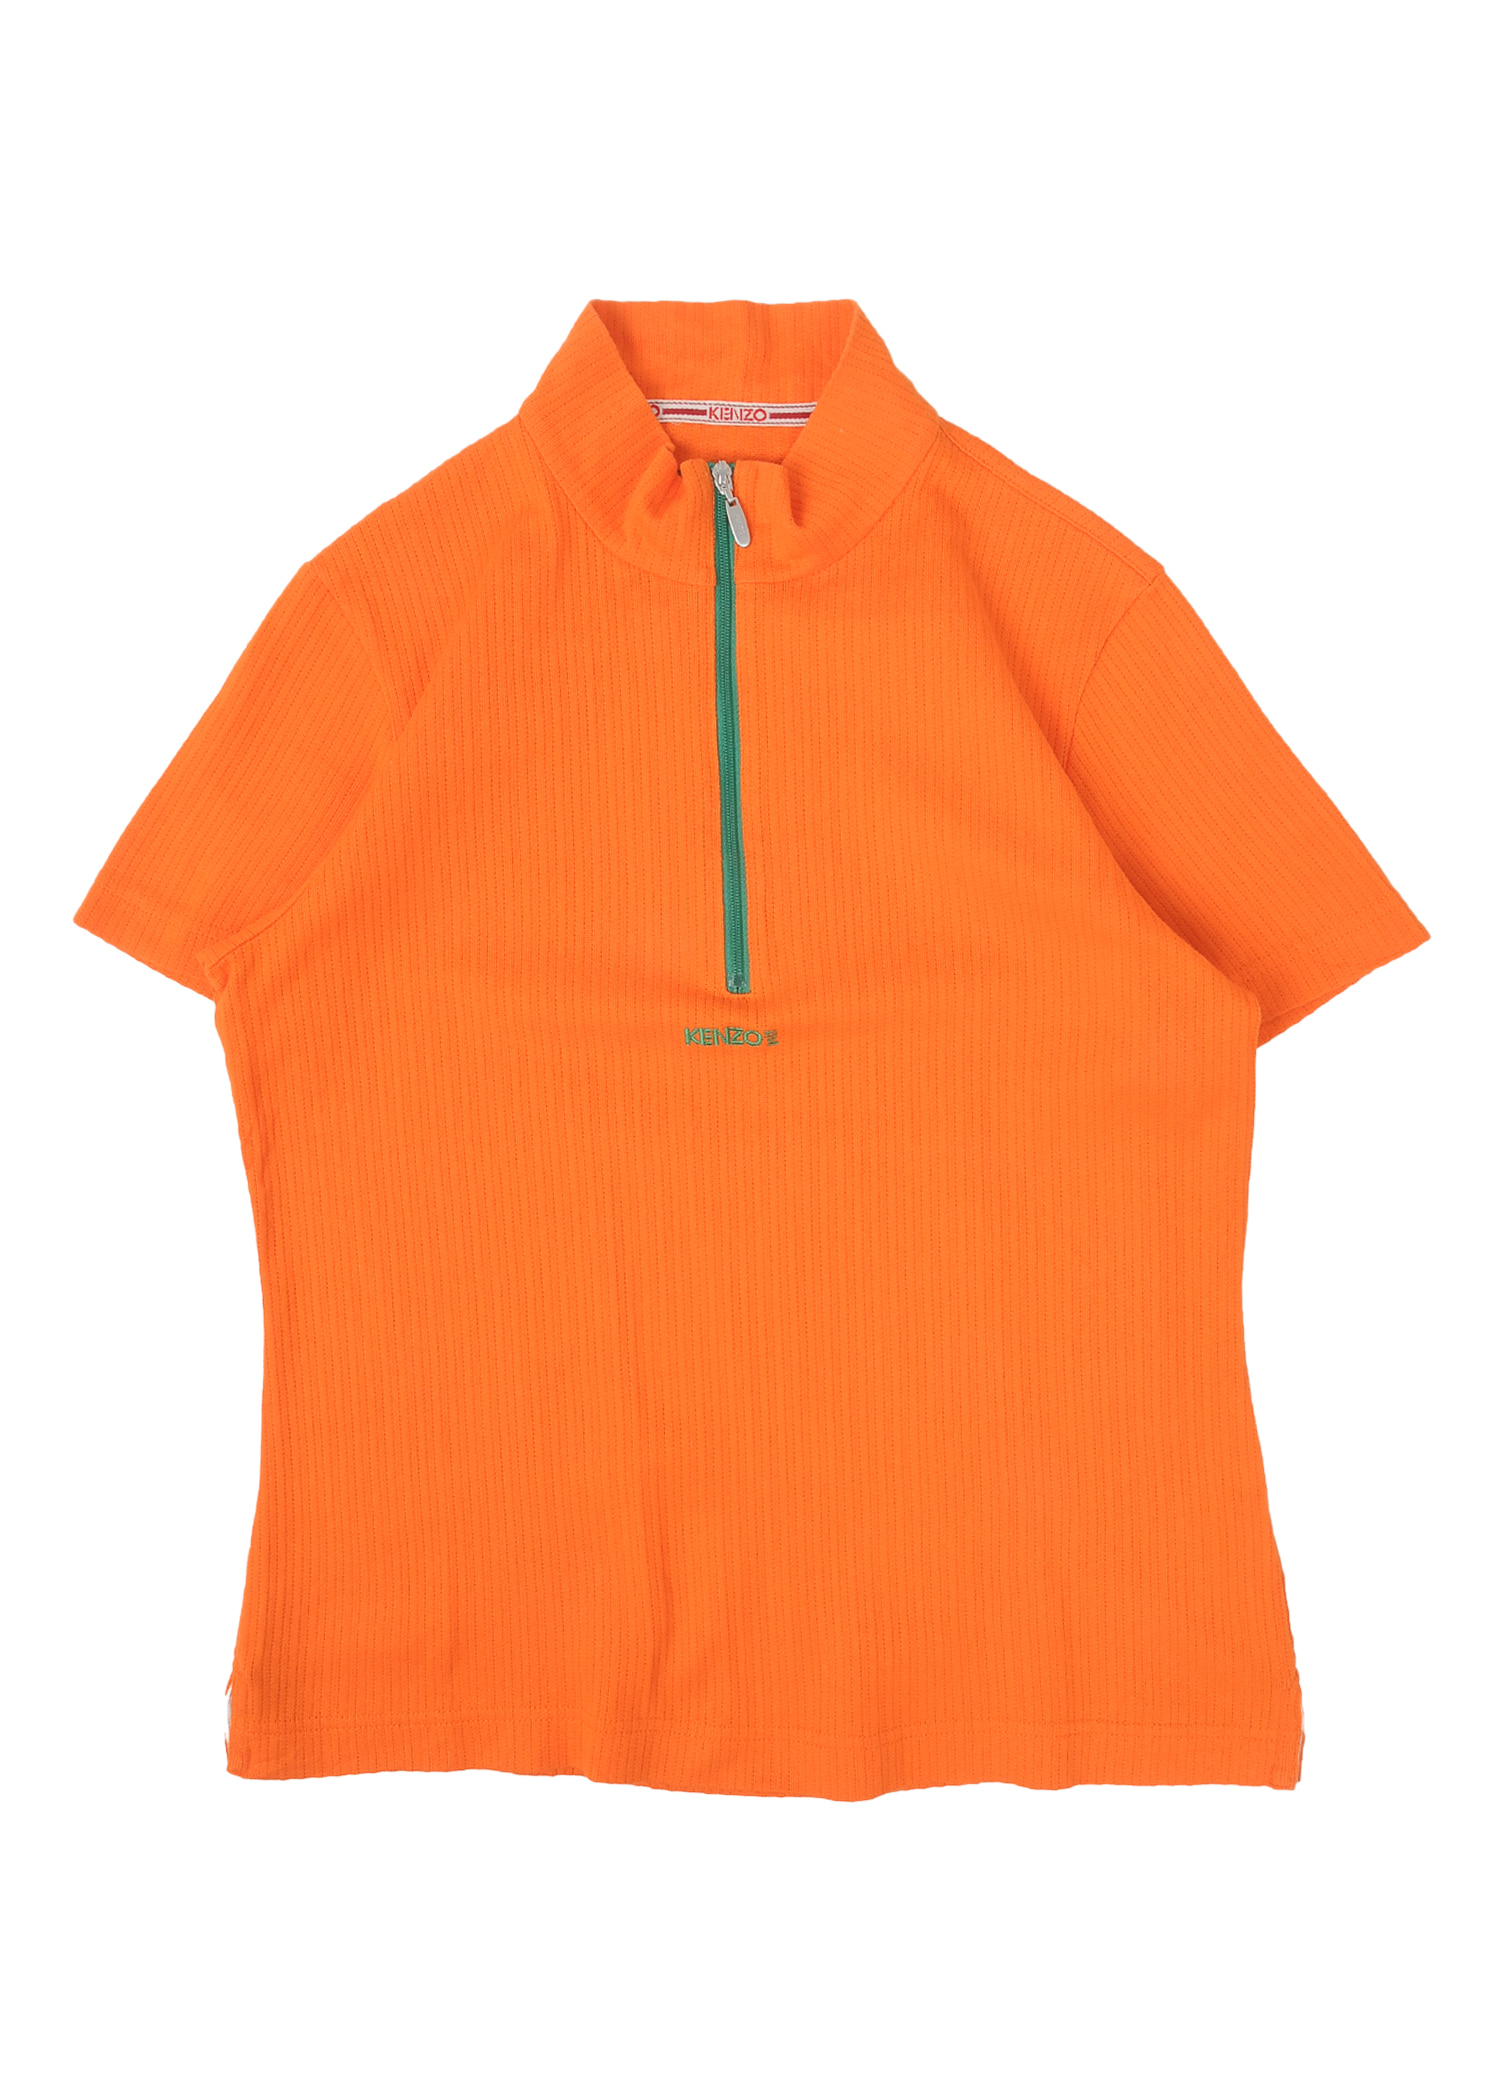 KENZO orange top